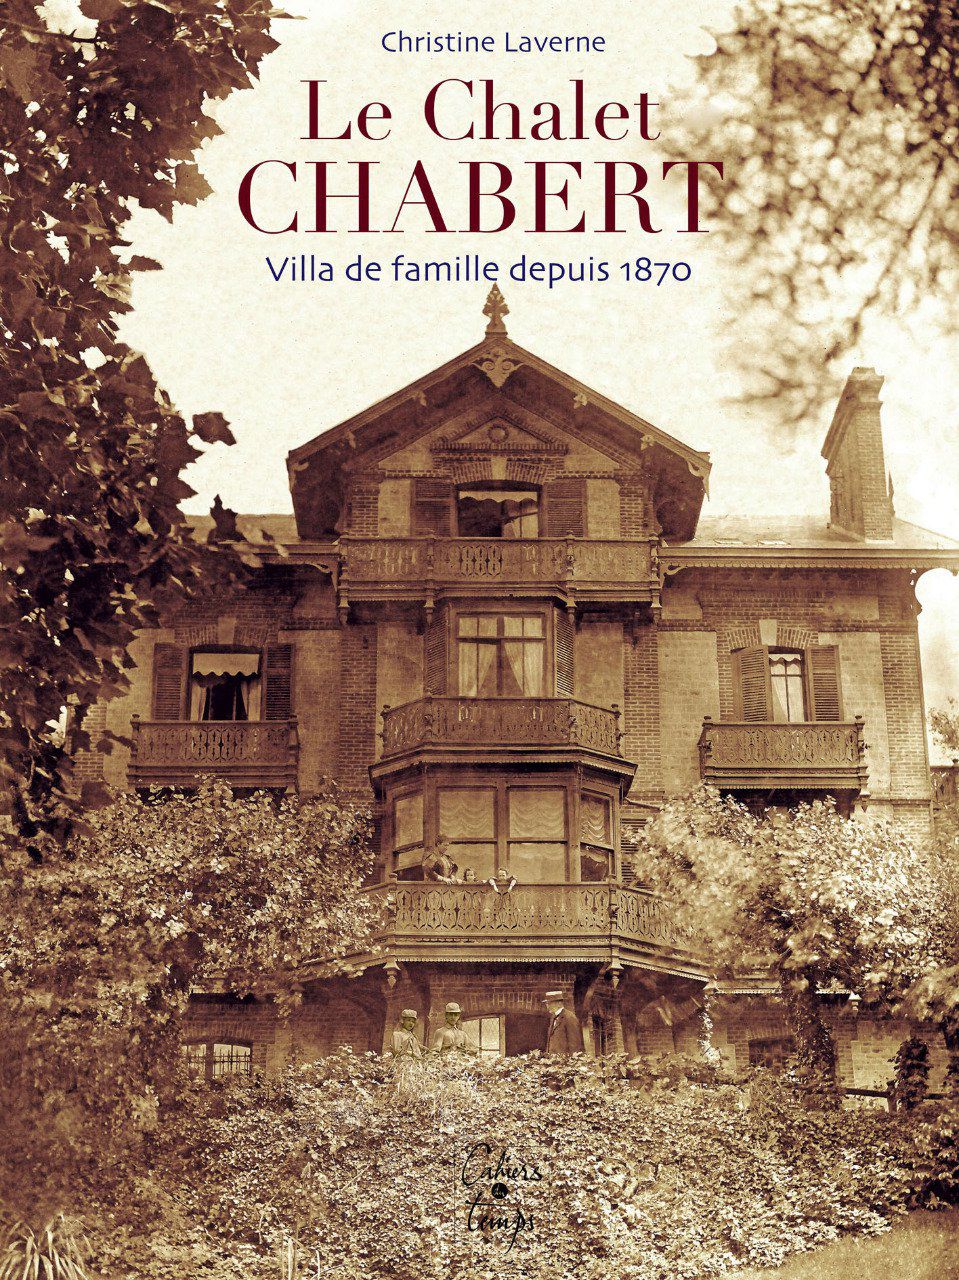 Chalet Chabert, villa de famille depuis 1870